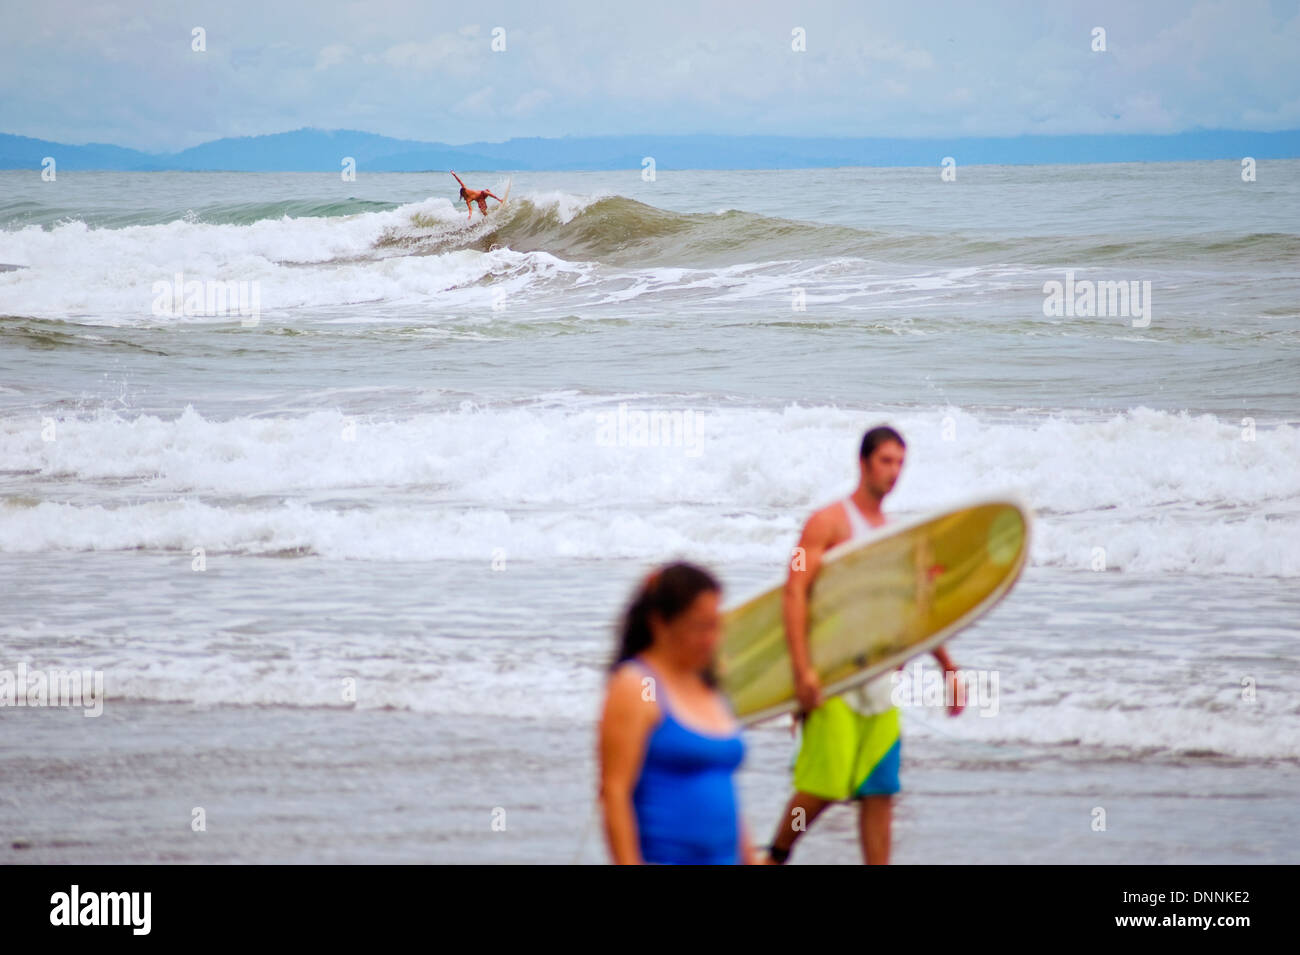 El surf en las playas de Dominical, Costa Rica Foto de stock